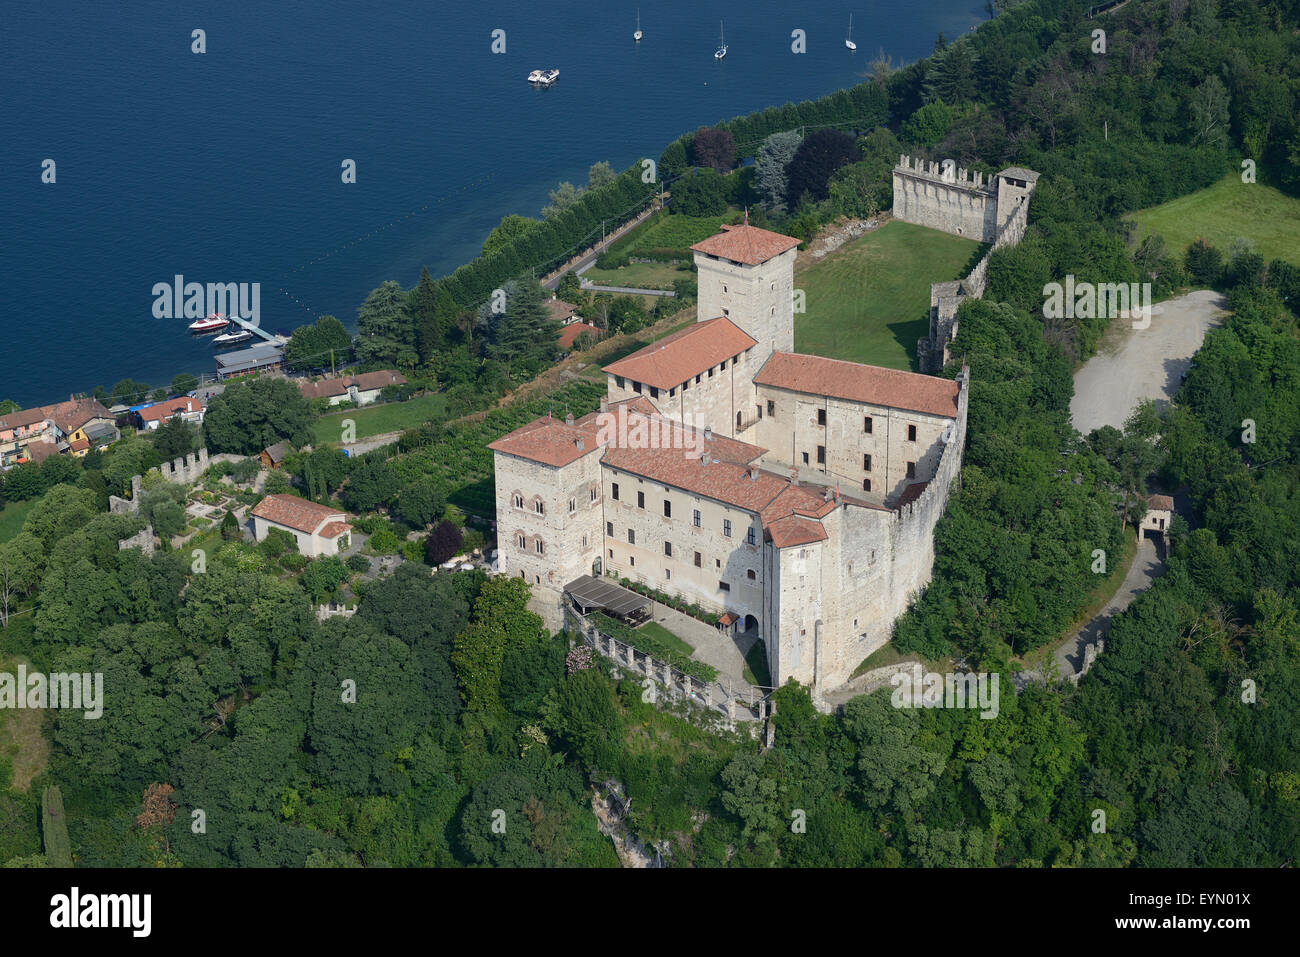 LUFTAUFNAHME. Burg Rocca Borromeo mit Blick auf den Lago Maggiore. Angera, Provinz Varese, Lombardei, Italien. Stockfoto